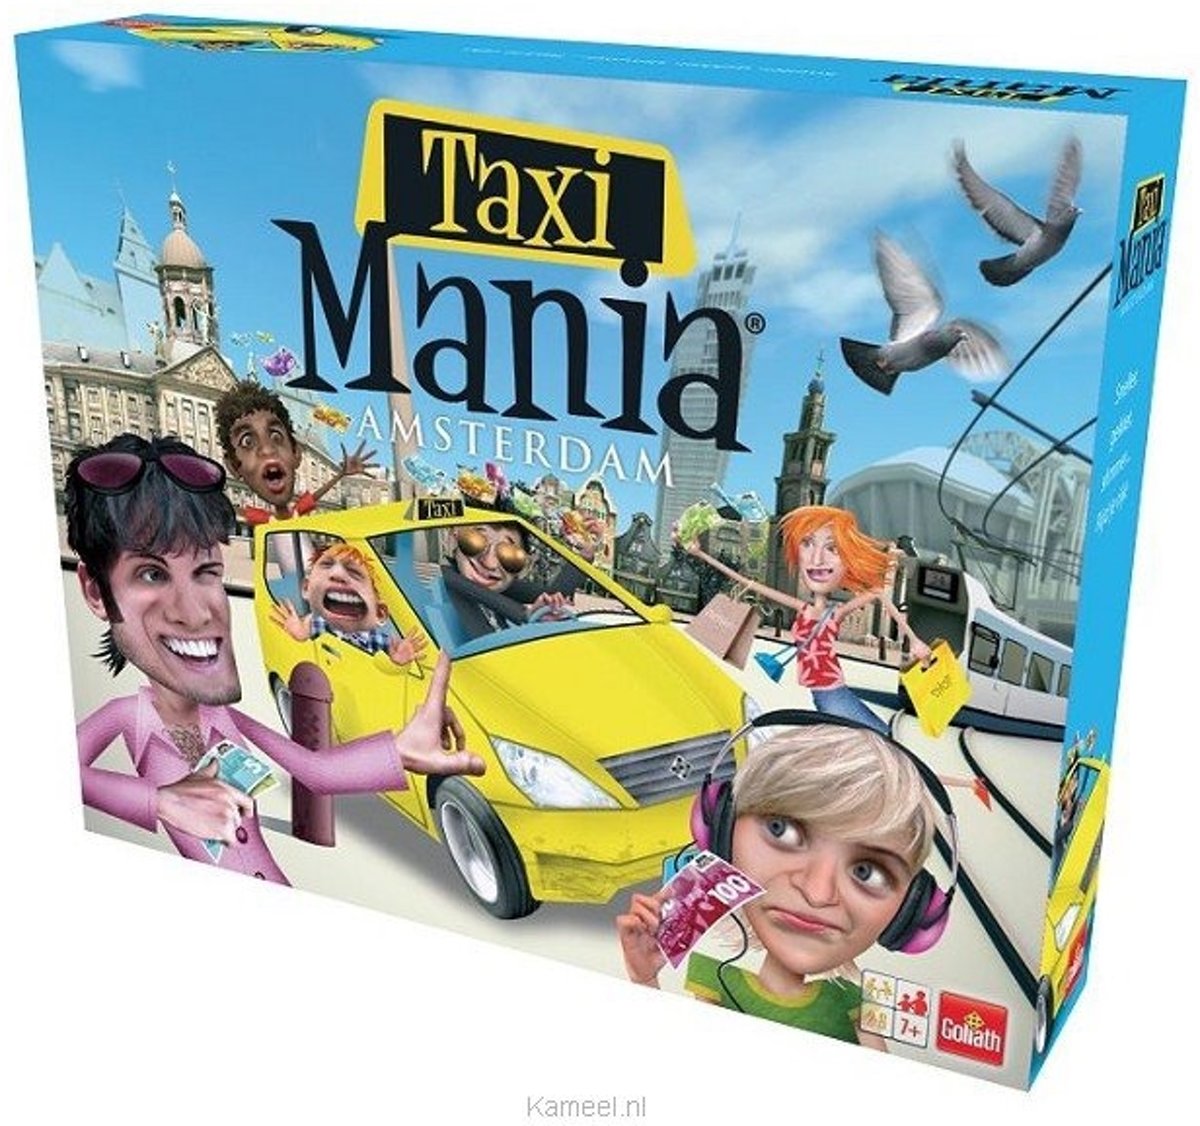 Taxi mania